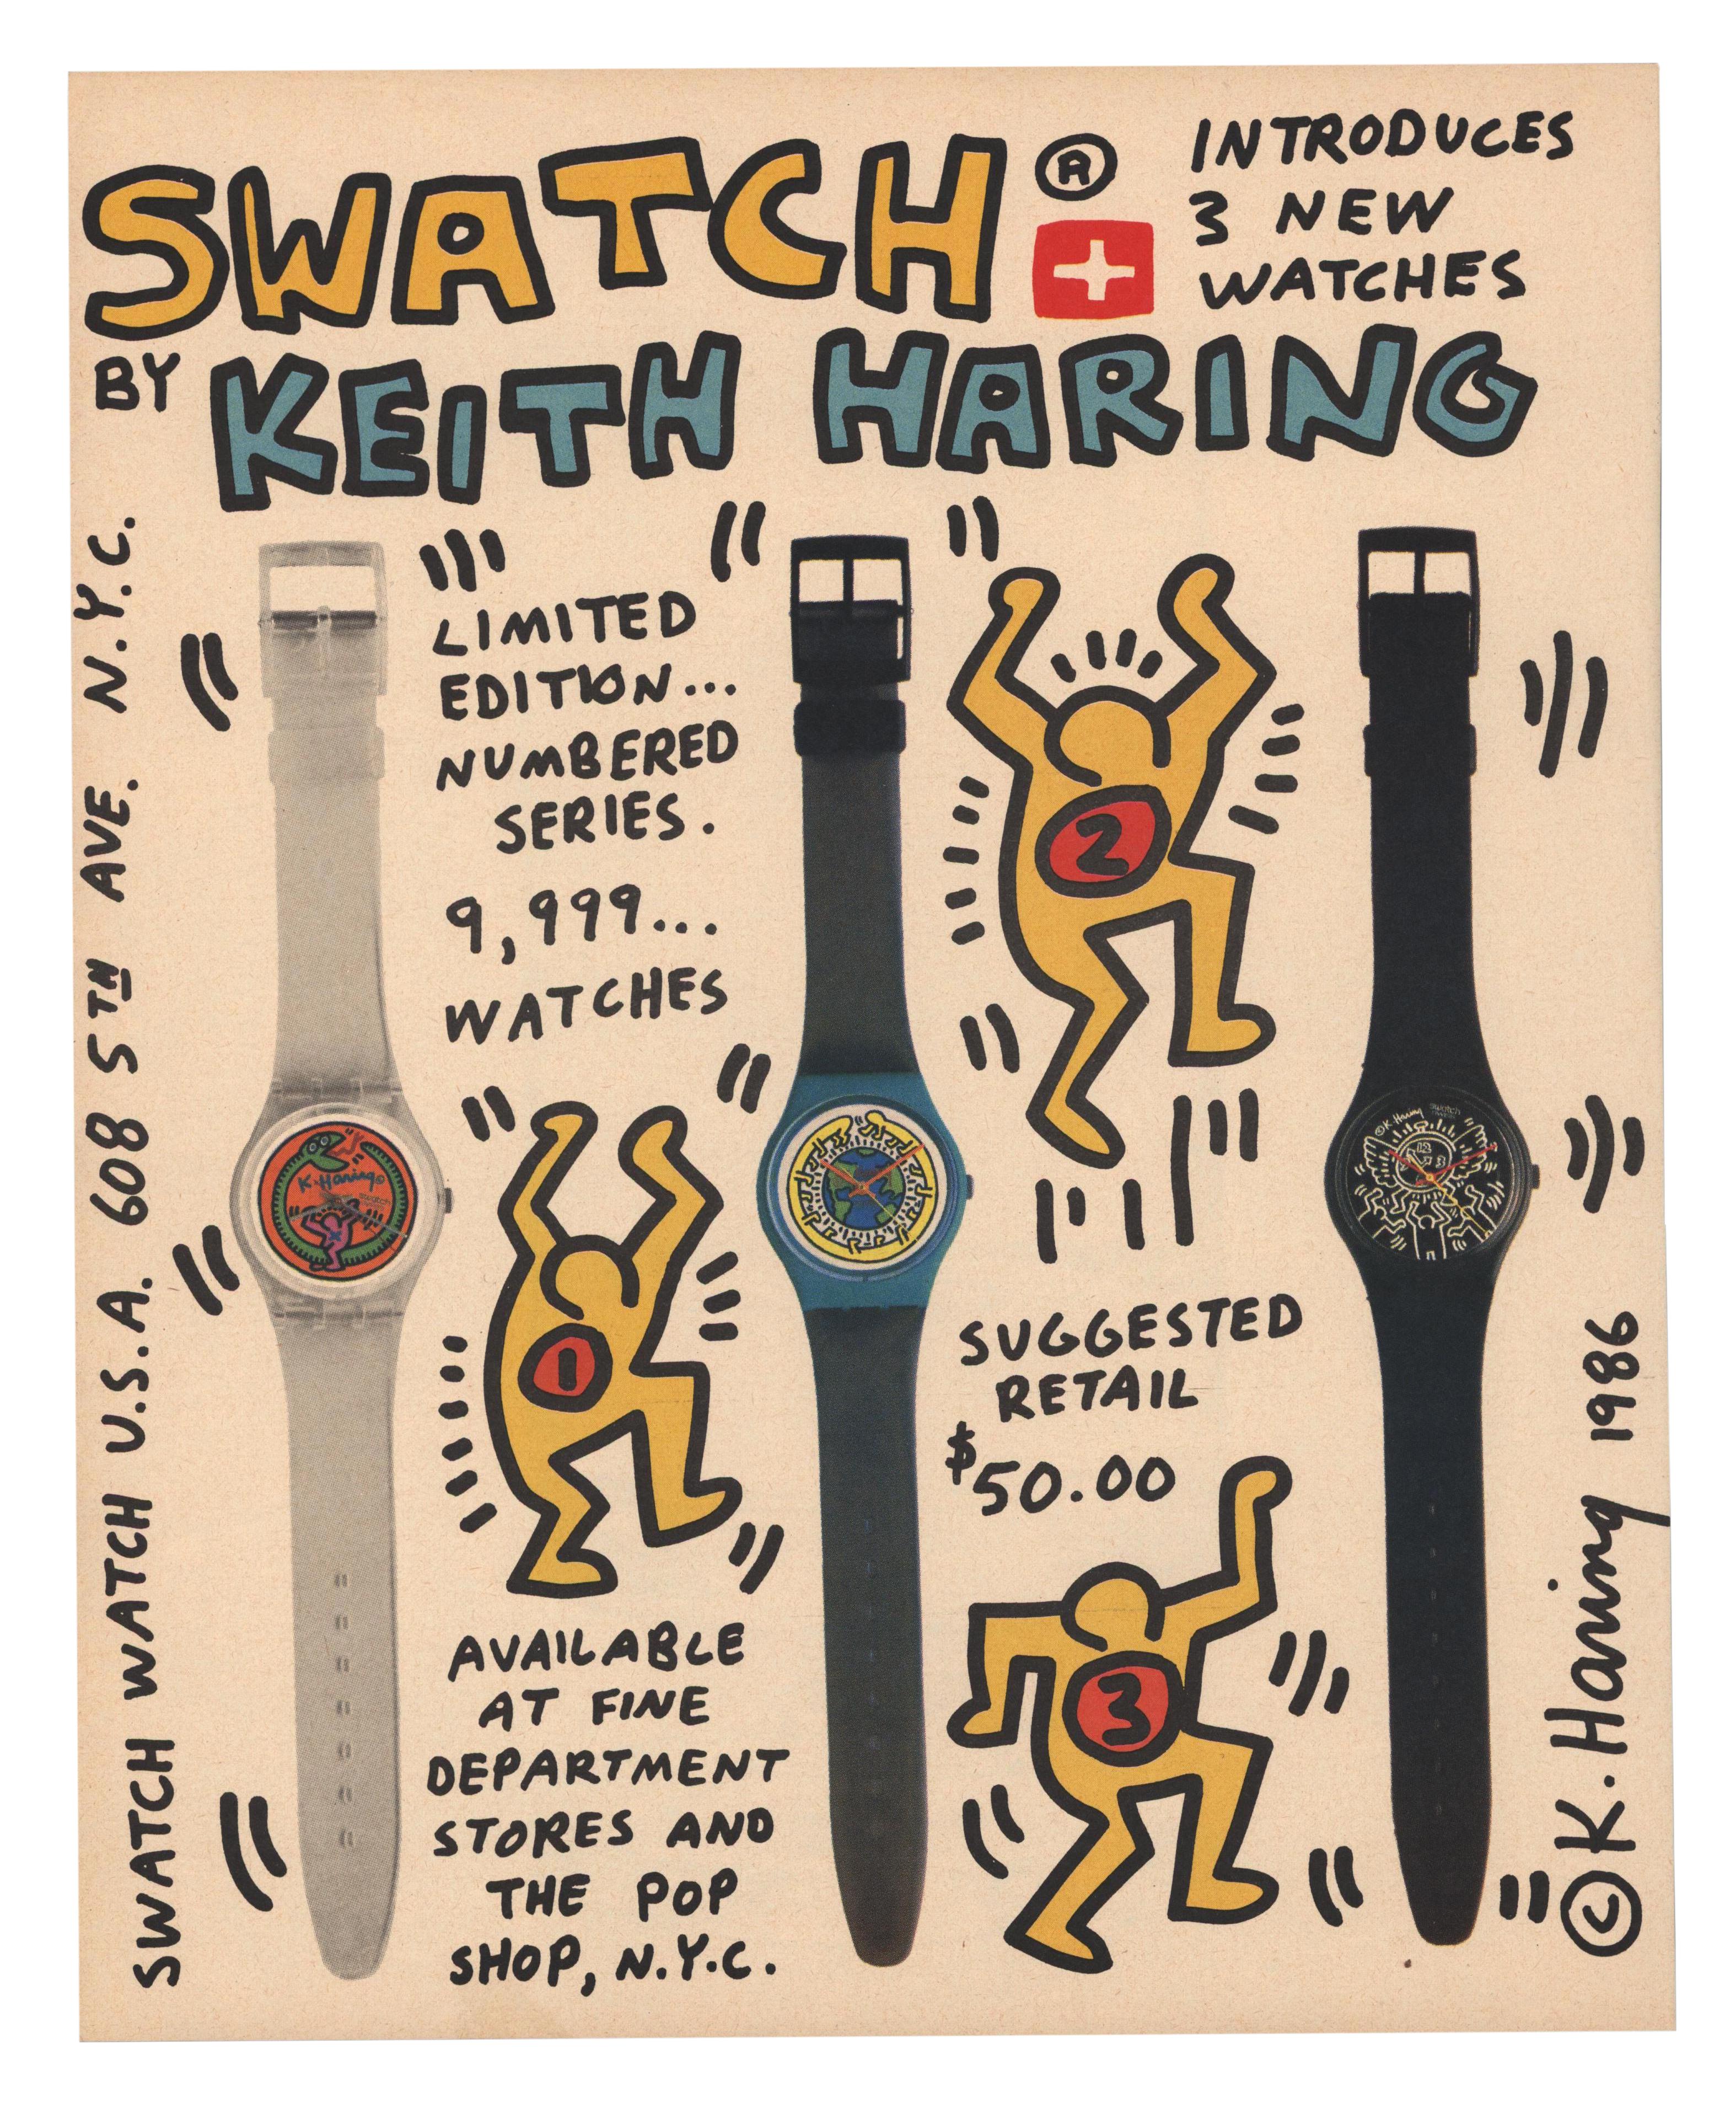 Collection de documents éphémères de Keith Haring des années 1980/1990 : 
Collectional de plus de 20 pièces éphémères de Keith Haring, datant pour la plupart de 1982 jusqu'au milieu des années 1990. Parmi les pièces maîtresses, citons une publicité